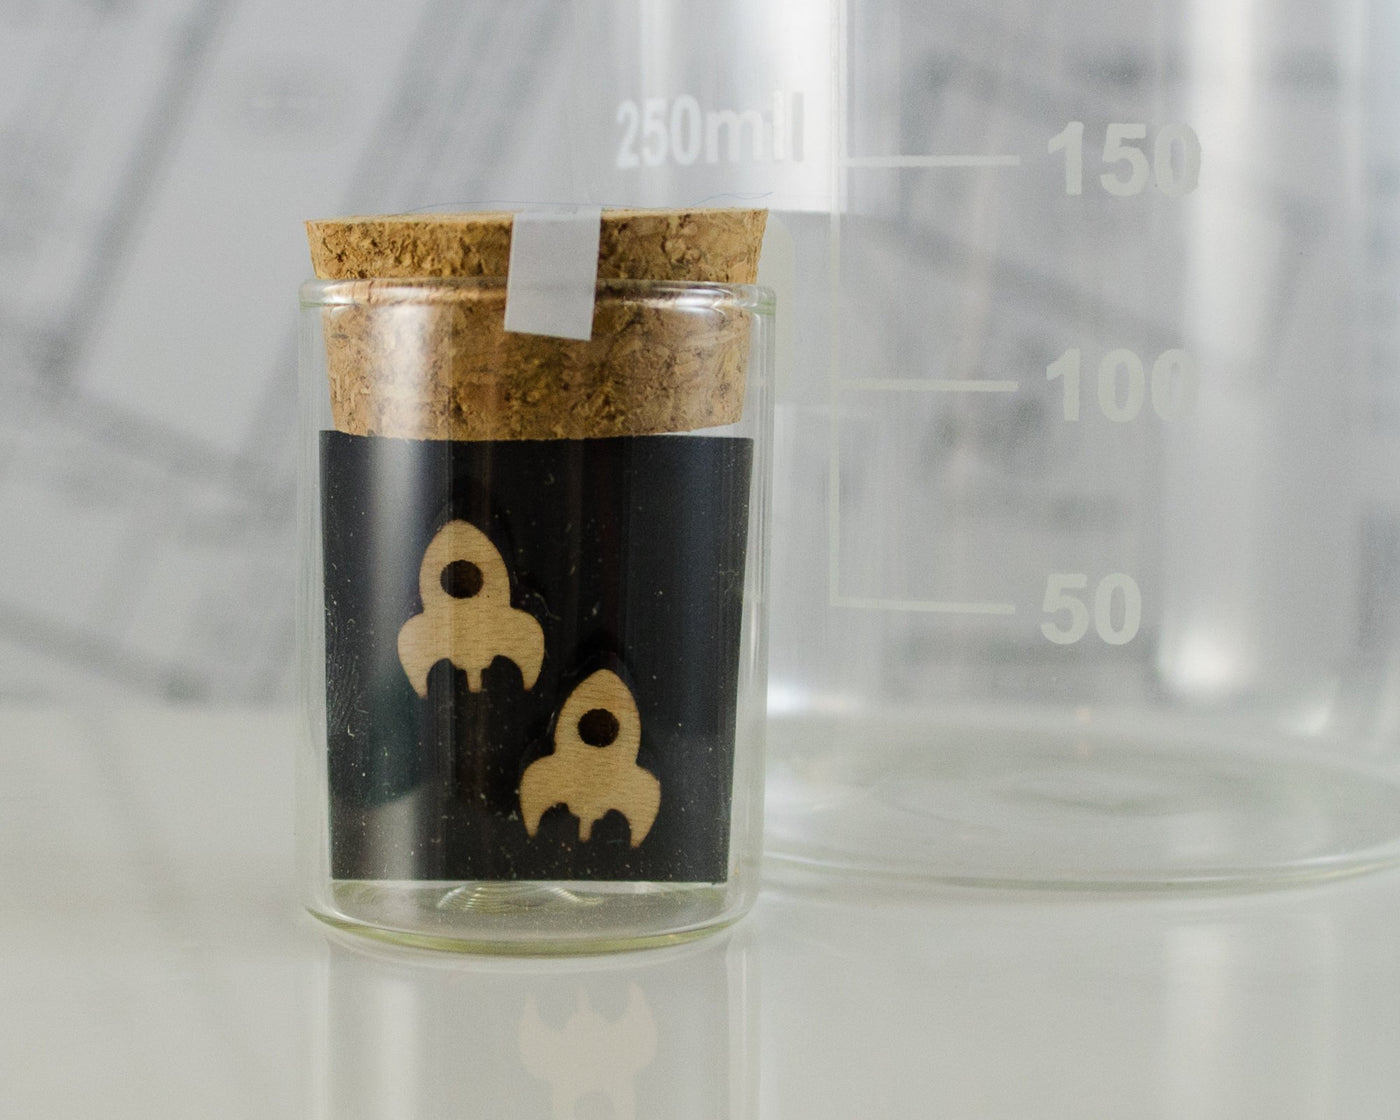 wooden rocket post earrings packaged in mini test tube